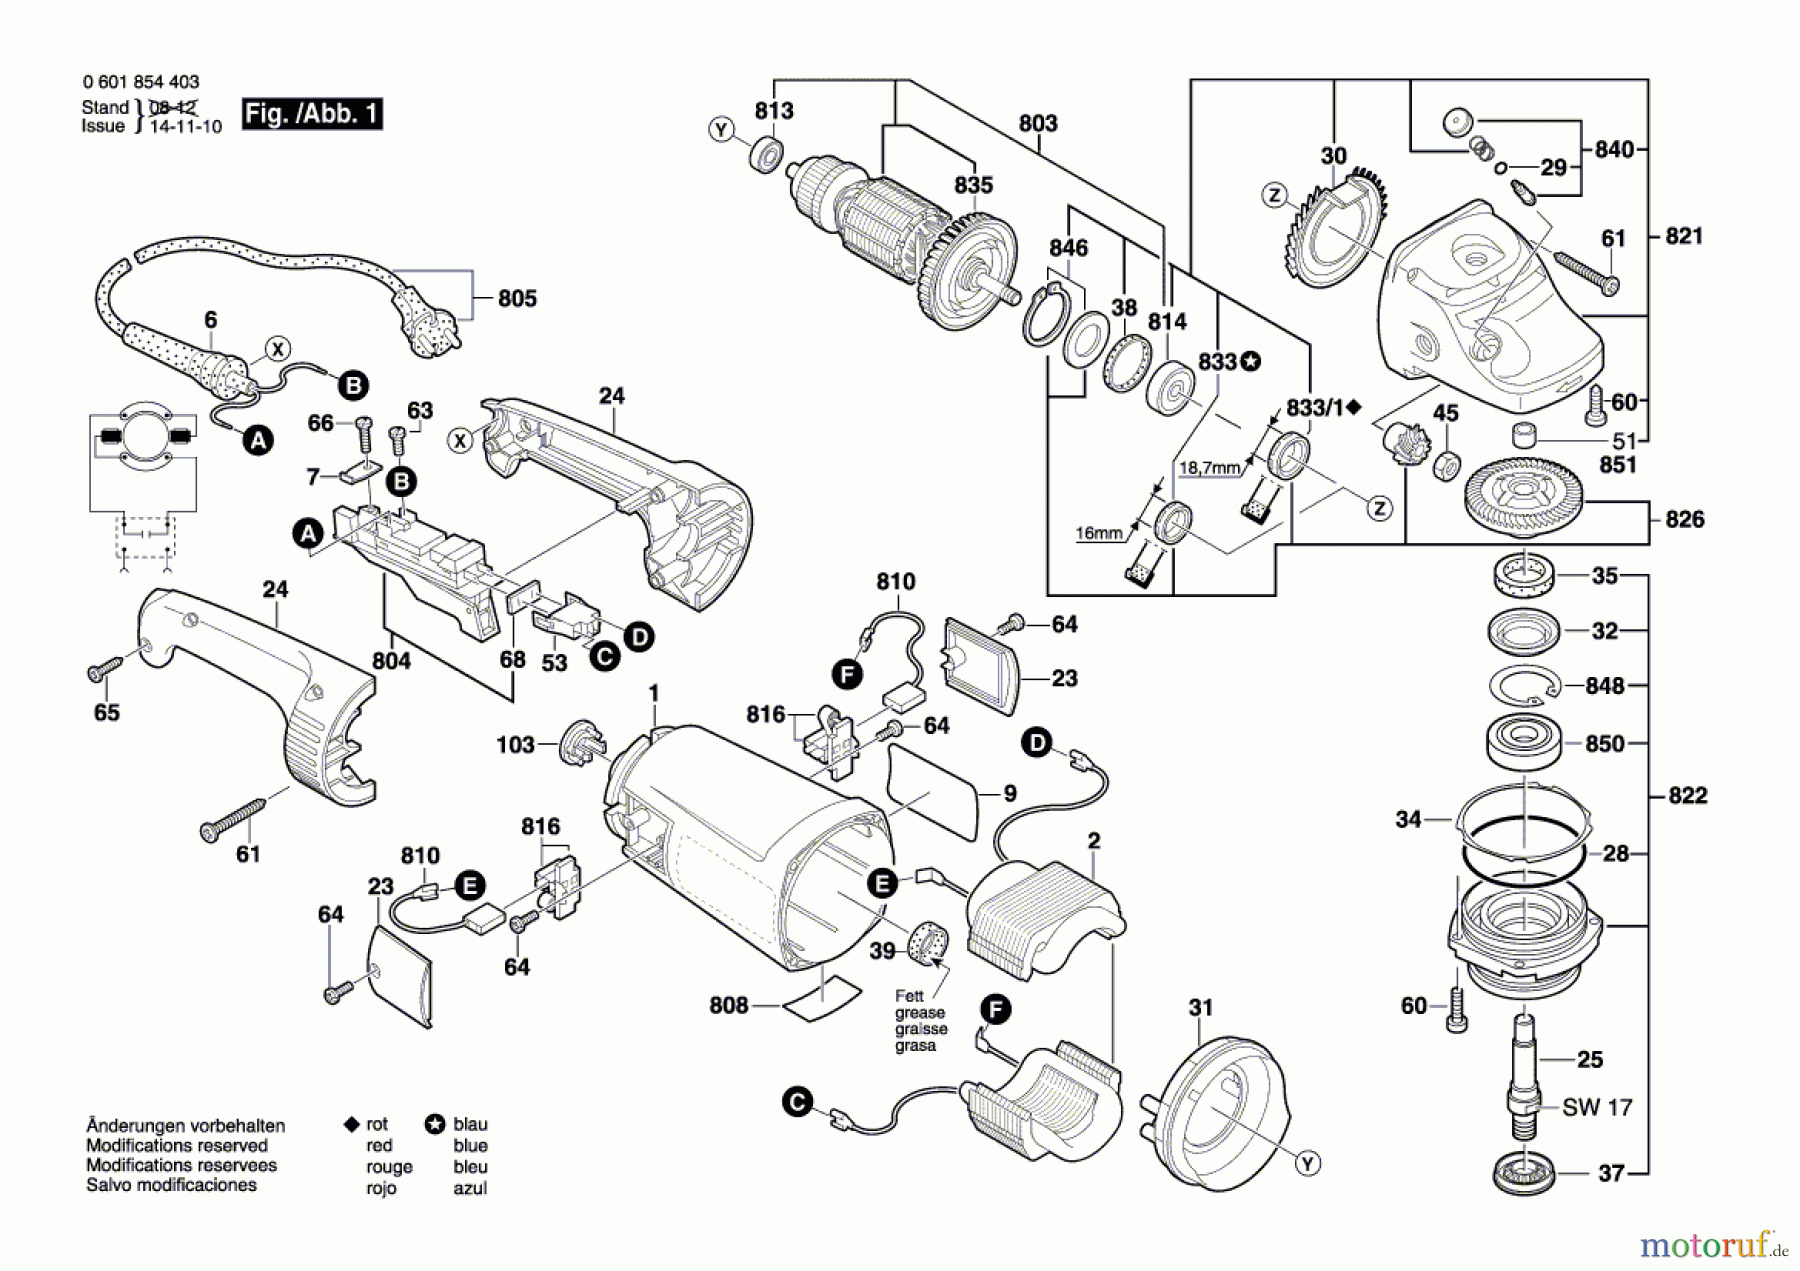  Bosch Werkzeug Winkelschleifer GWS 24-230 Seite 1